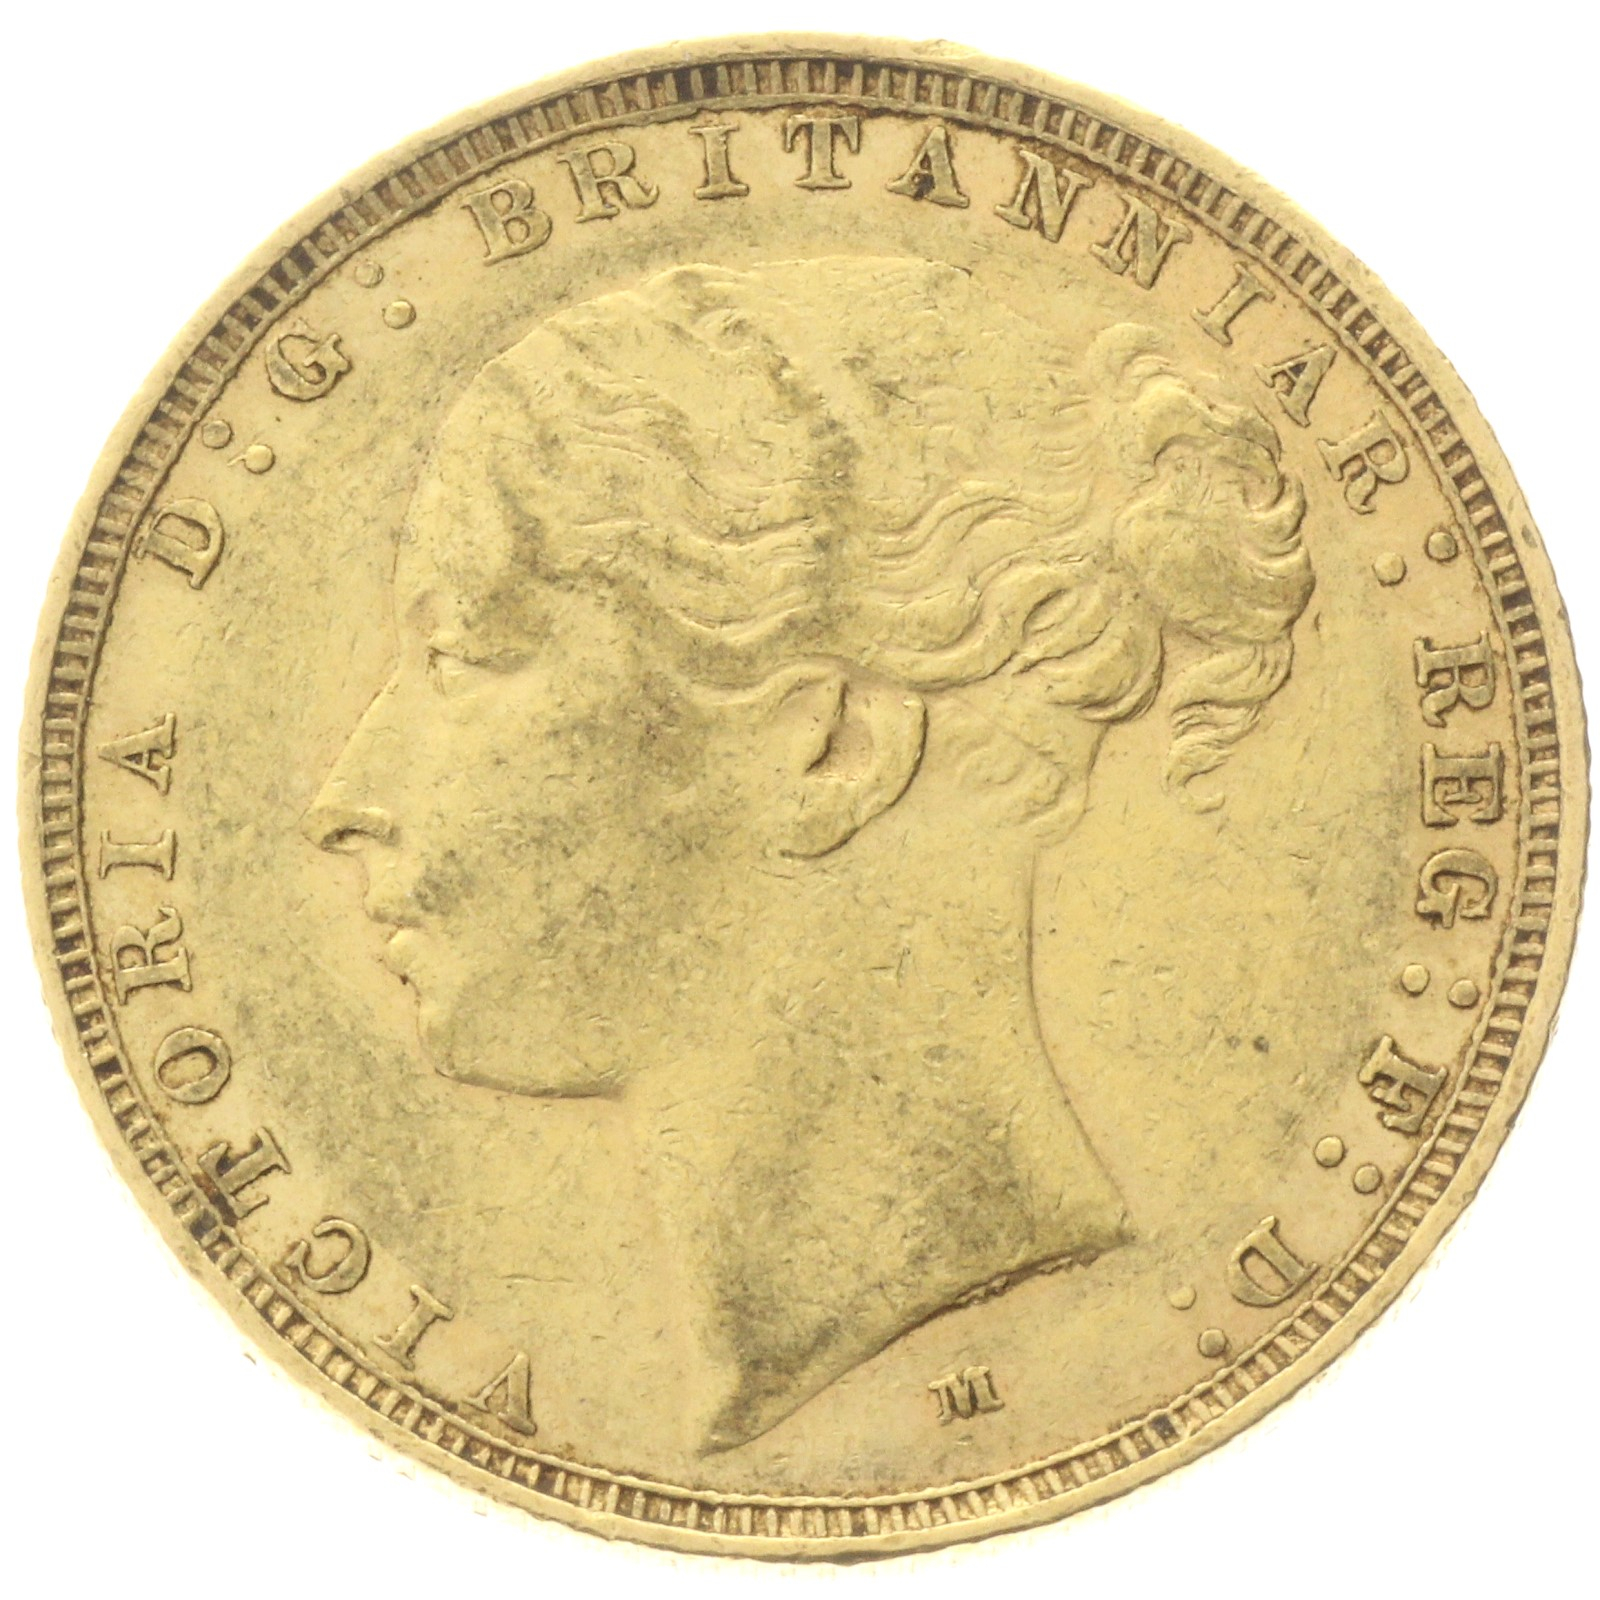 Australia - 1 Sovereign - 1882 - M - Victoria 